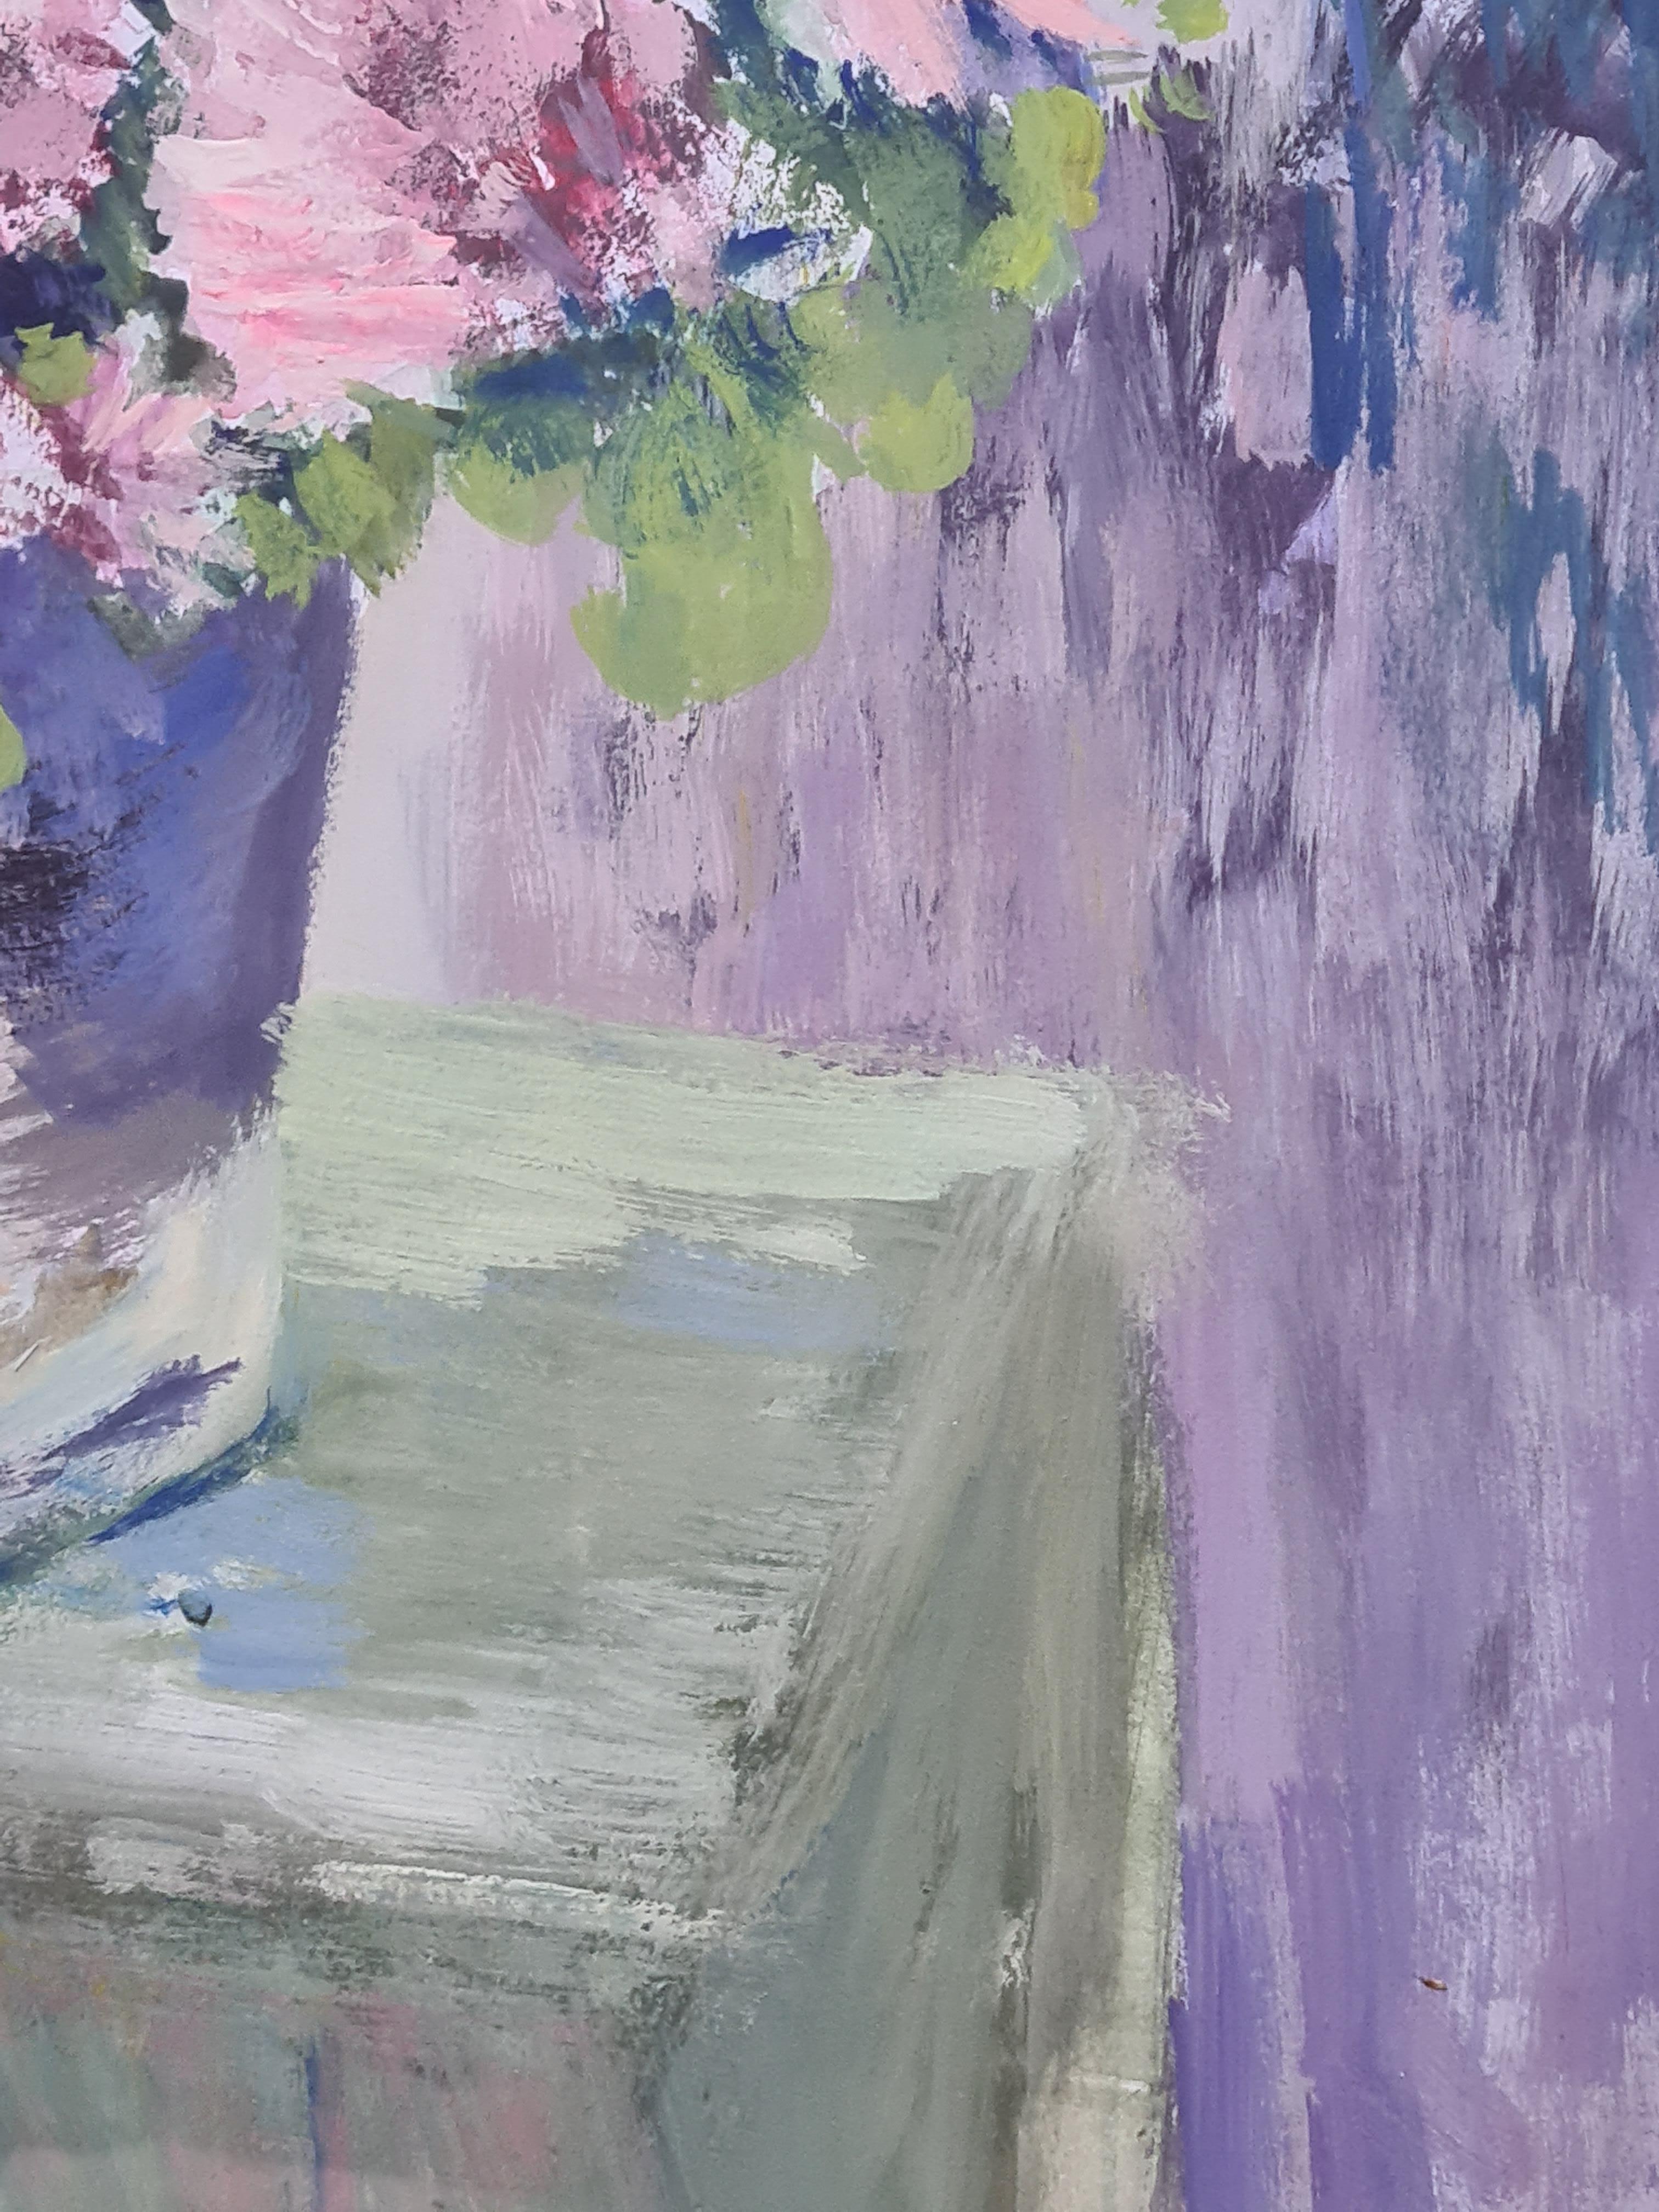 Ein Aquarell und Gouache auf Papier von rosa Chrysanthemen oder Oillets in einer Vase. Das Gemälde ist unten rechts monogrammiert, aber noch nicht entziffert. Das Gemälde ist in einem modernen Metallrahmen unter Glas gerahmt.

Eine sehr charmante